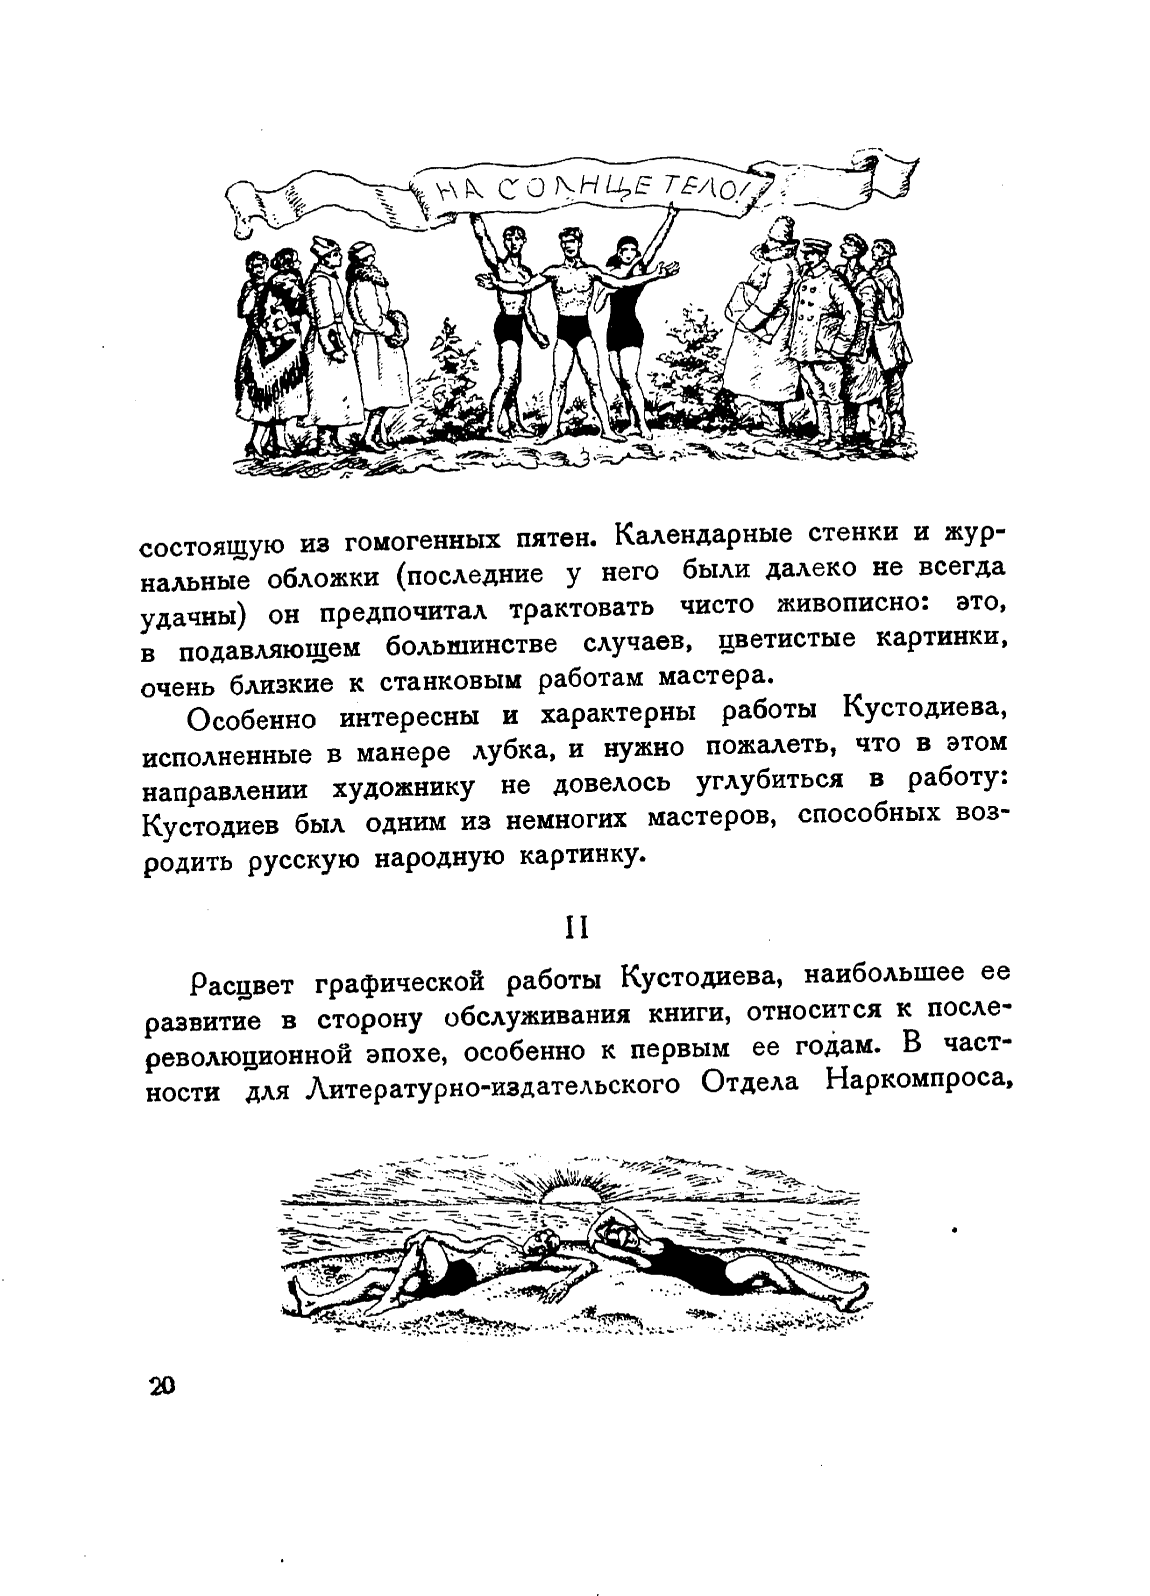 Кустодиев. Иллюстрация к книге Н. Подвойского „Смычка с солнцем“